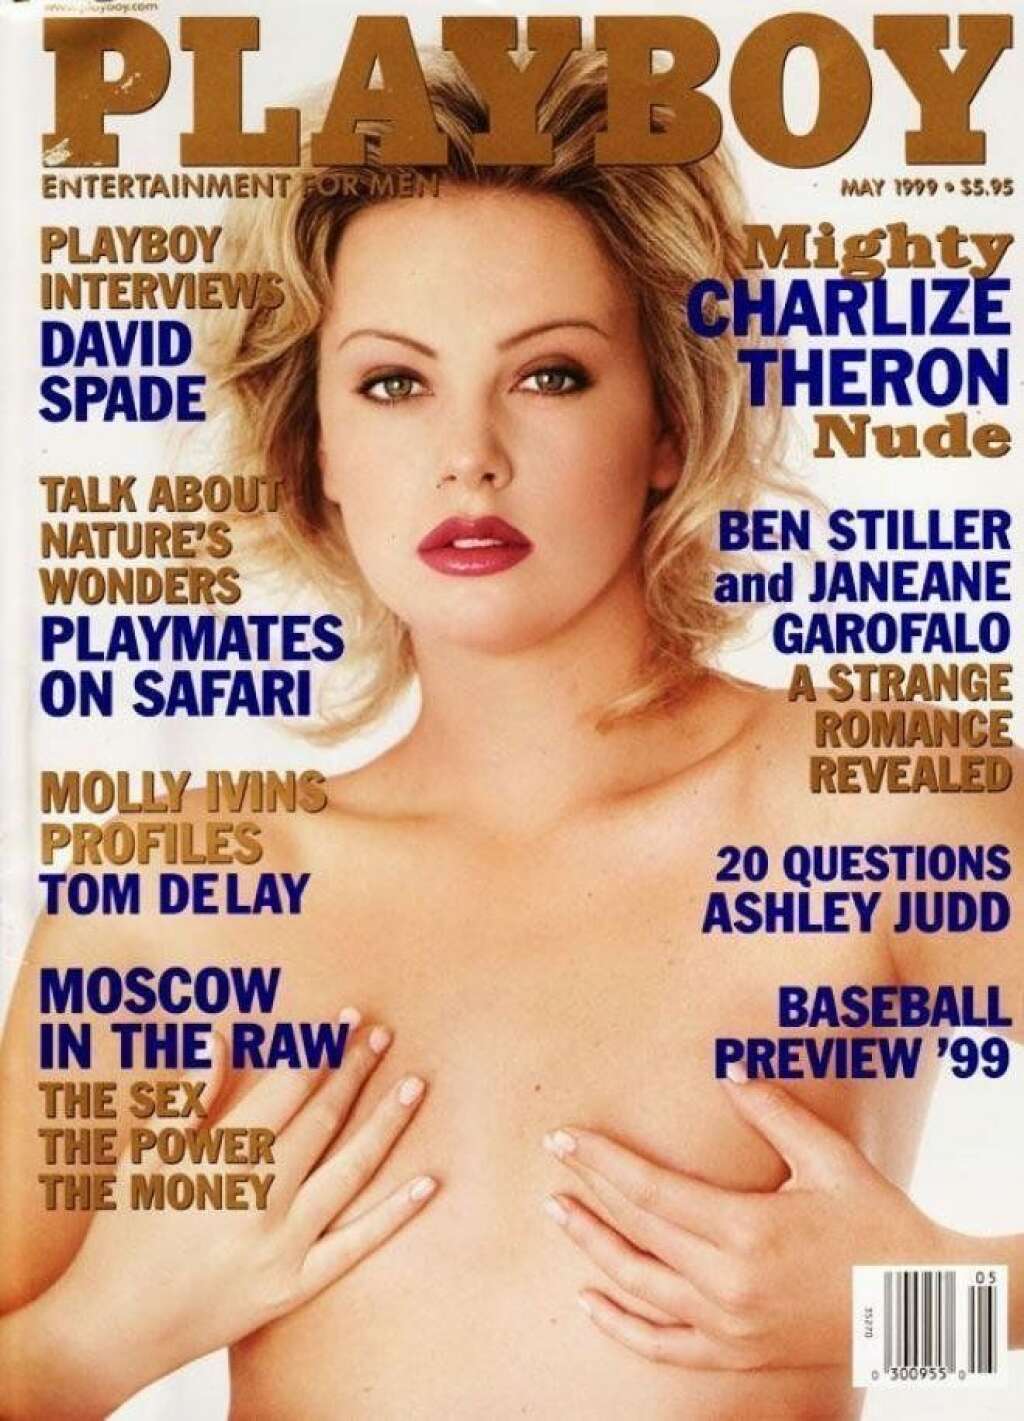 Playboy - 95% des publicités sont hyper-masculines, d'après Buzzfeed